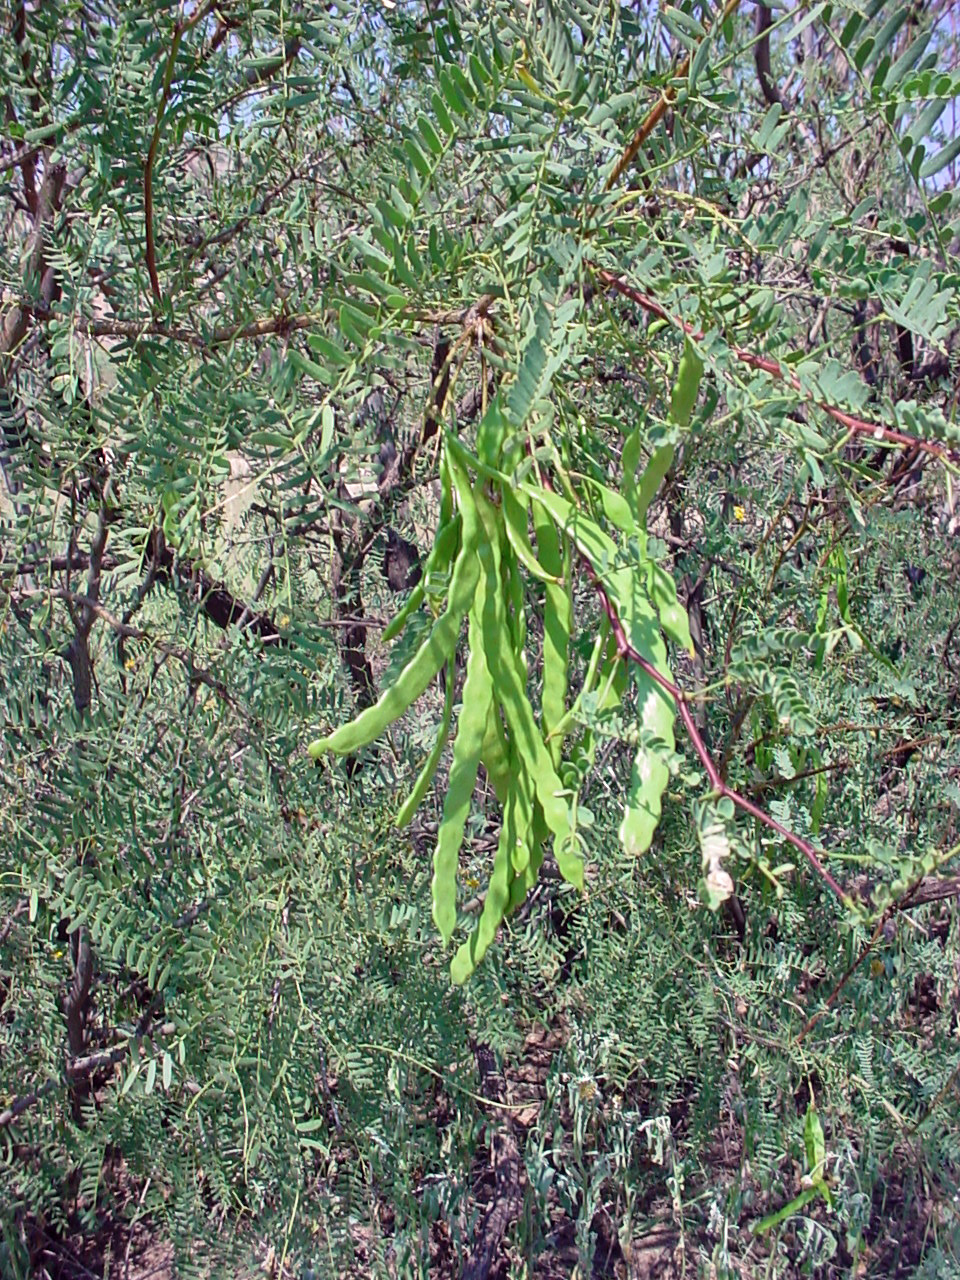 Western Honey Mesquite, Prosopis Glandulosa